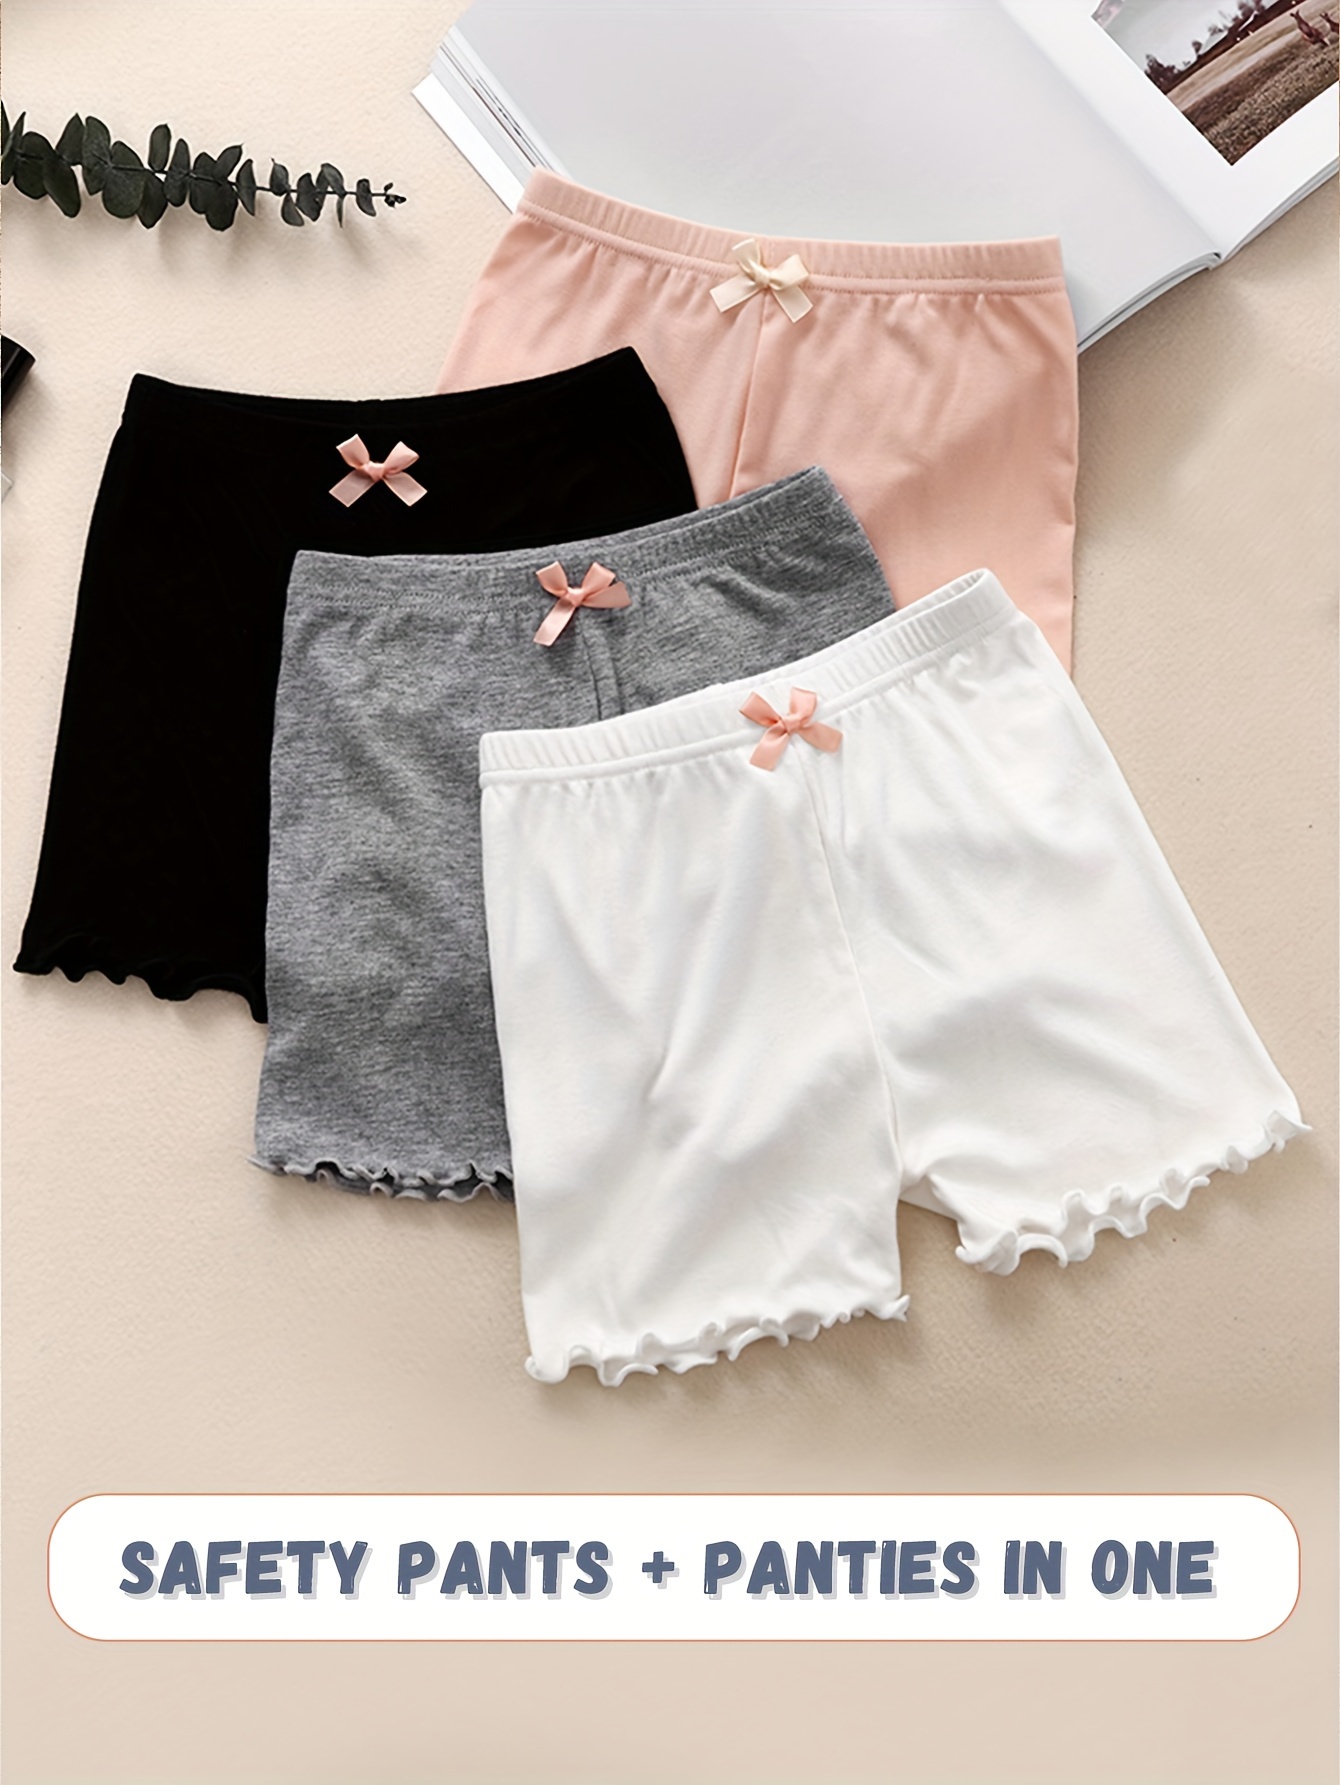 7pcs/Set Tween Girls' Fruit Printed Underwear